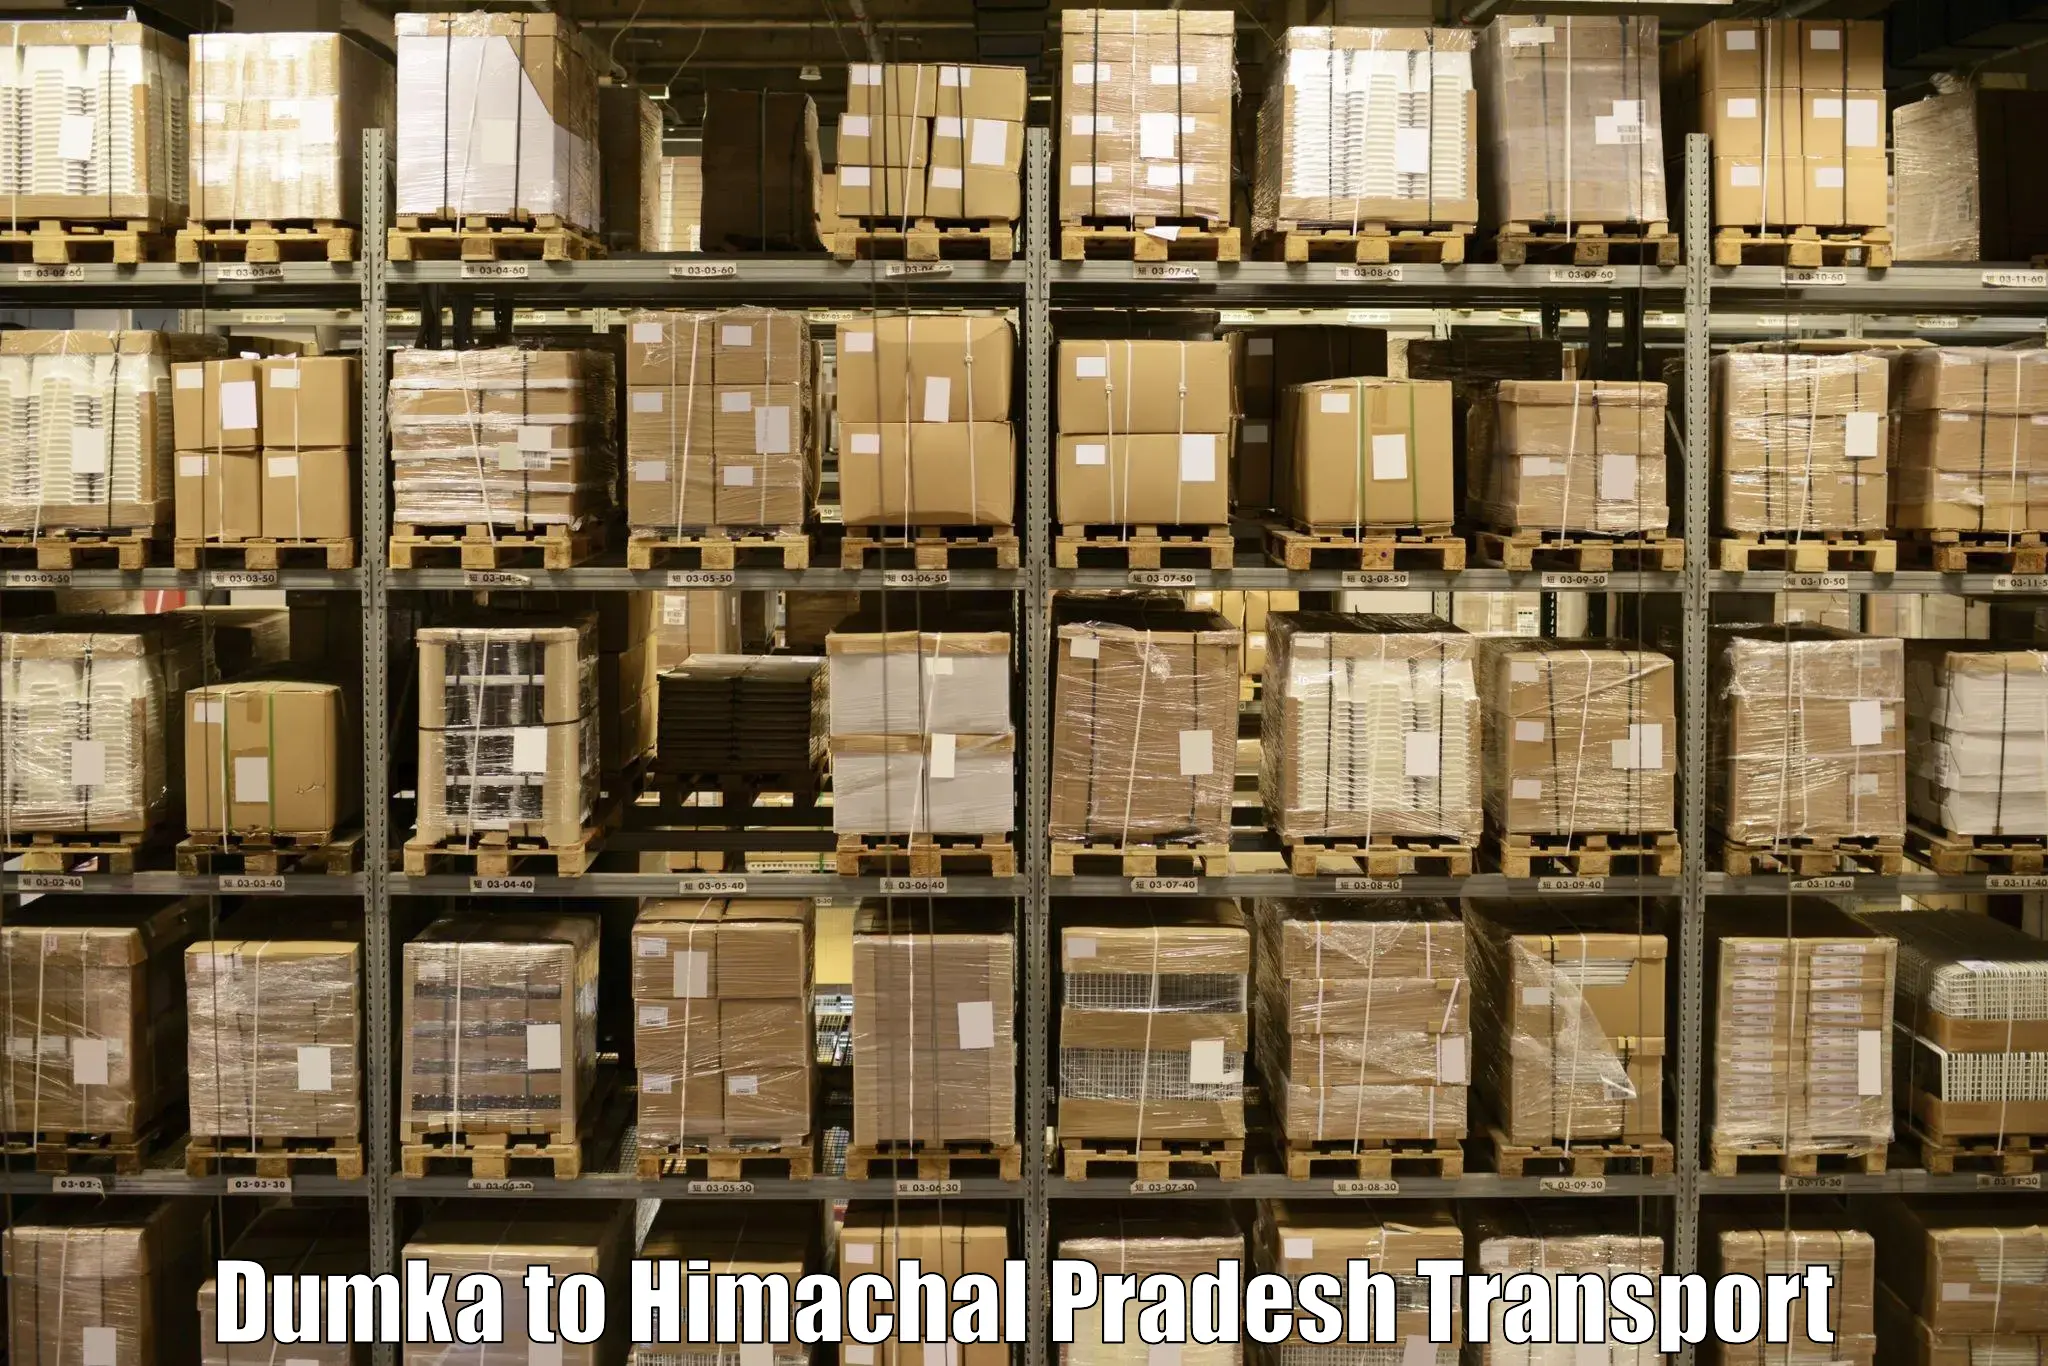 Commercial transport service Dumka to Sandhol